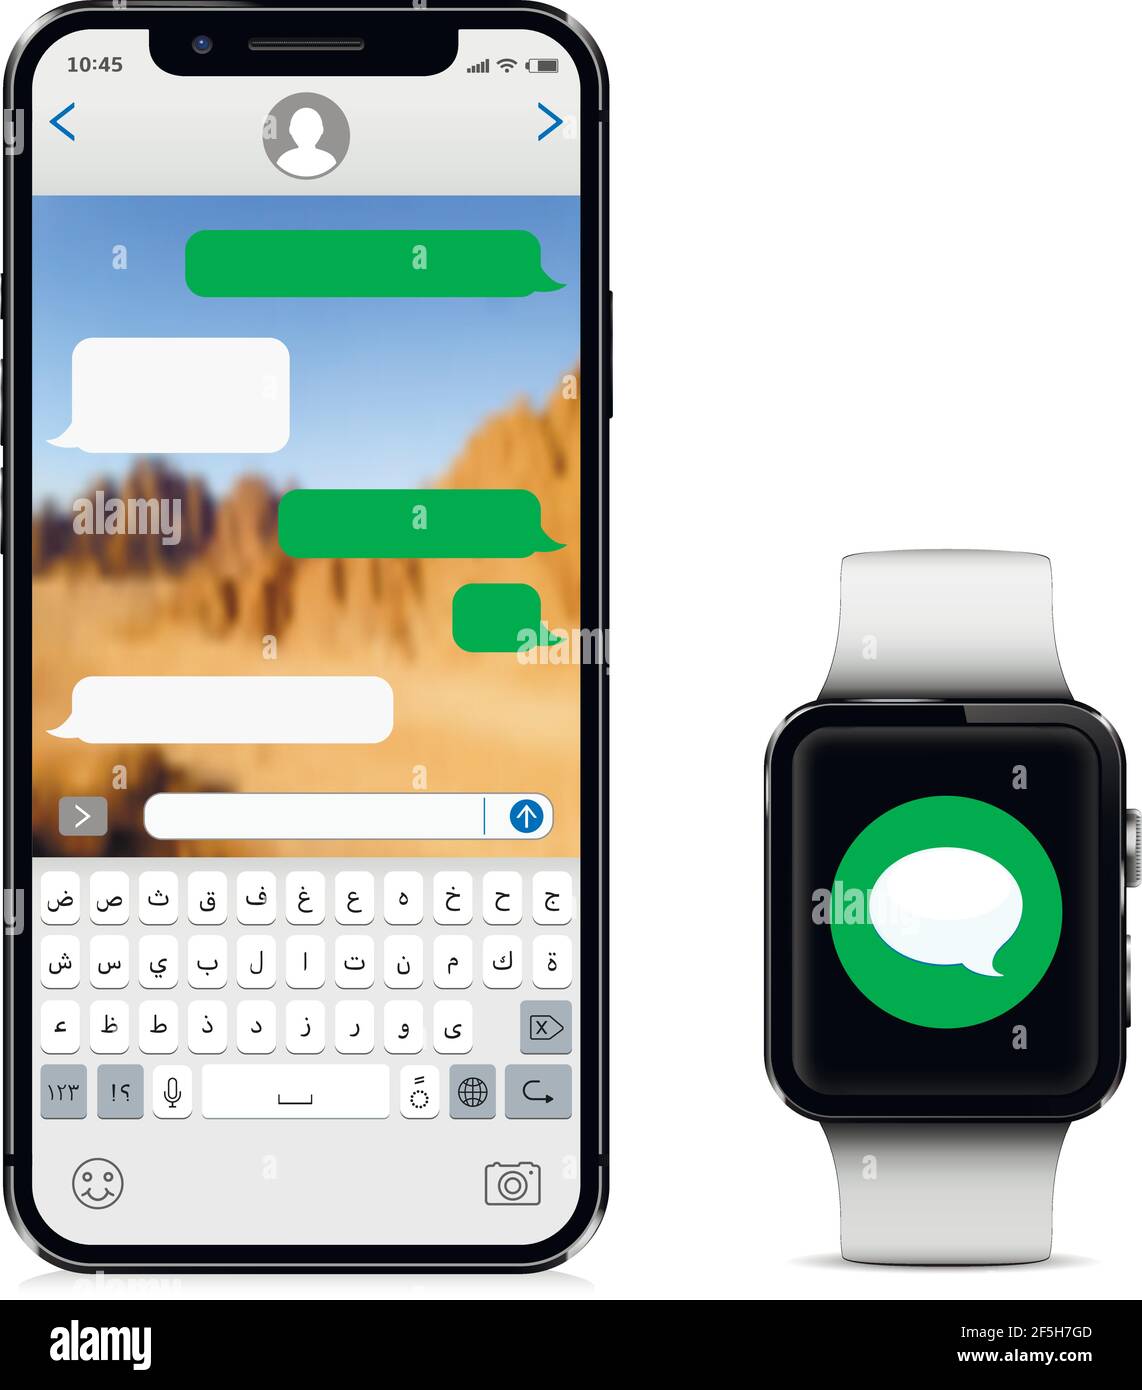 Smartphone mit arabischer Tastatur und Smart Watch mit neuer Nachricht auf dem Bildschirm isoliert auf weißem Hintergrund. Vektorgrafik. Stock Vektor